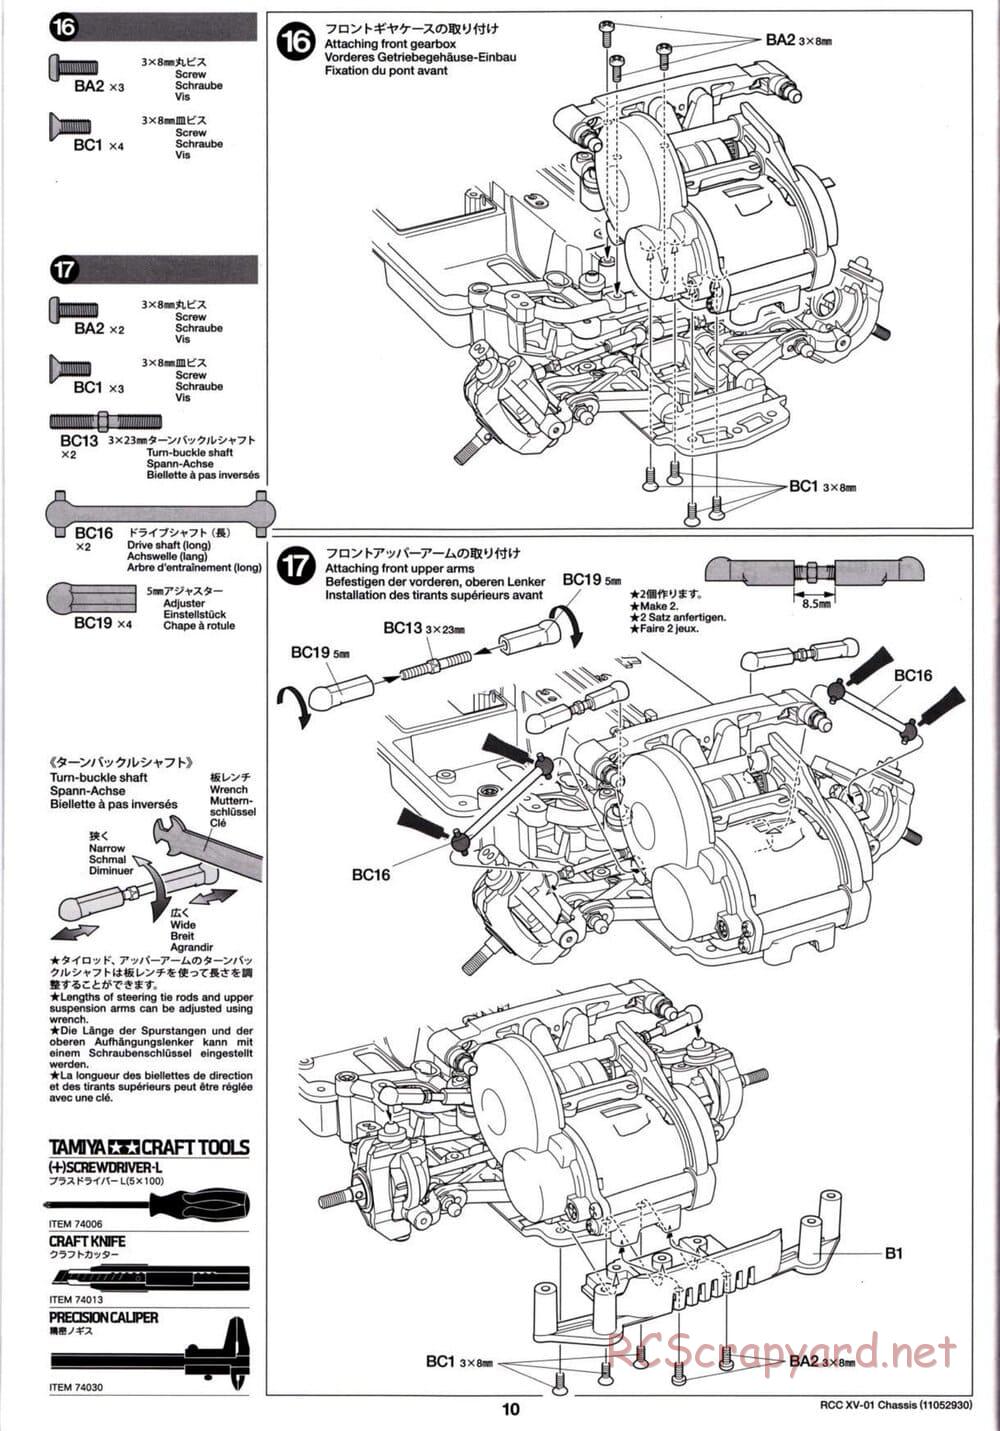 Tamiya - XV-01 Chassis - Manual - Page 10